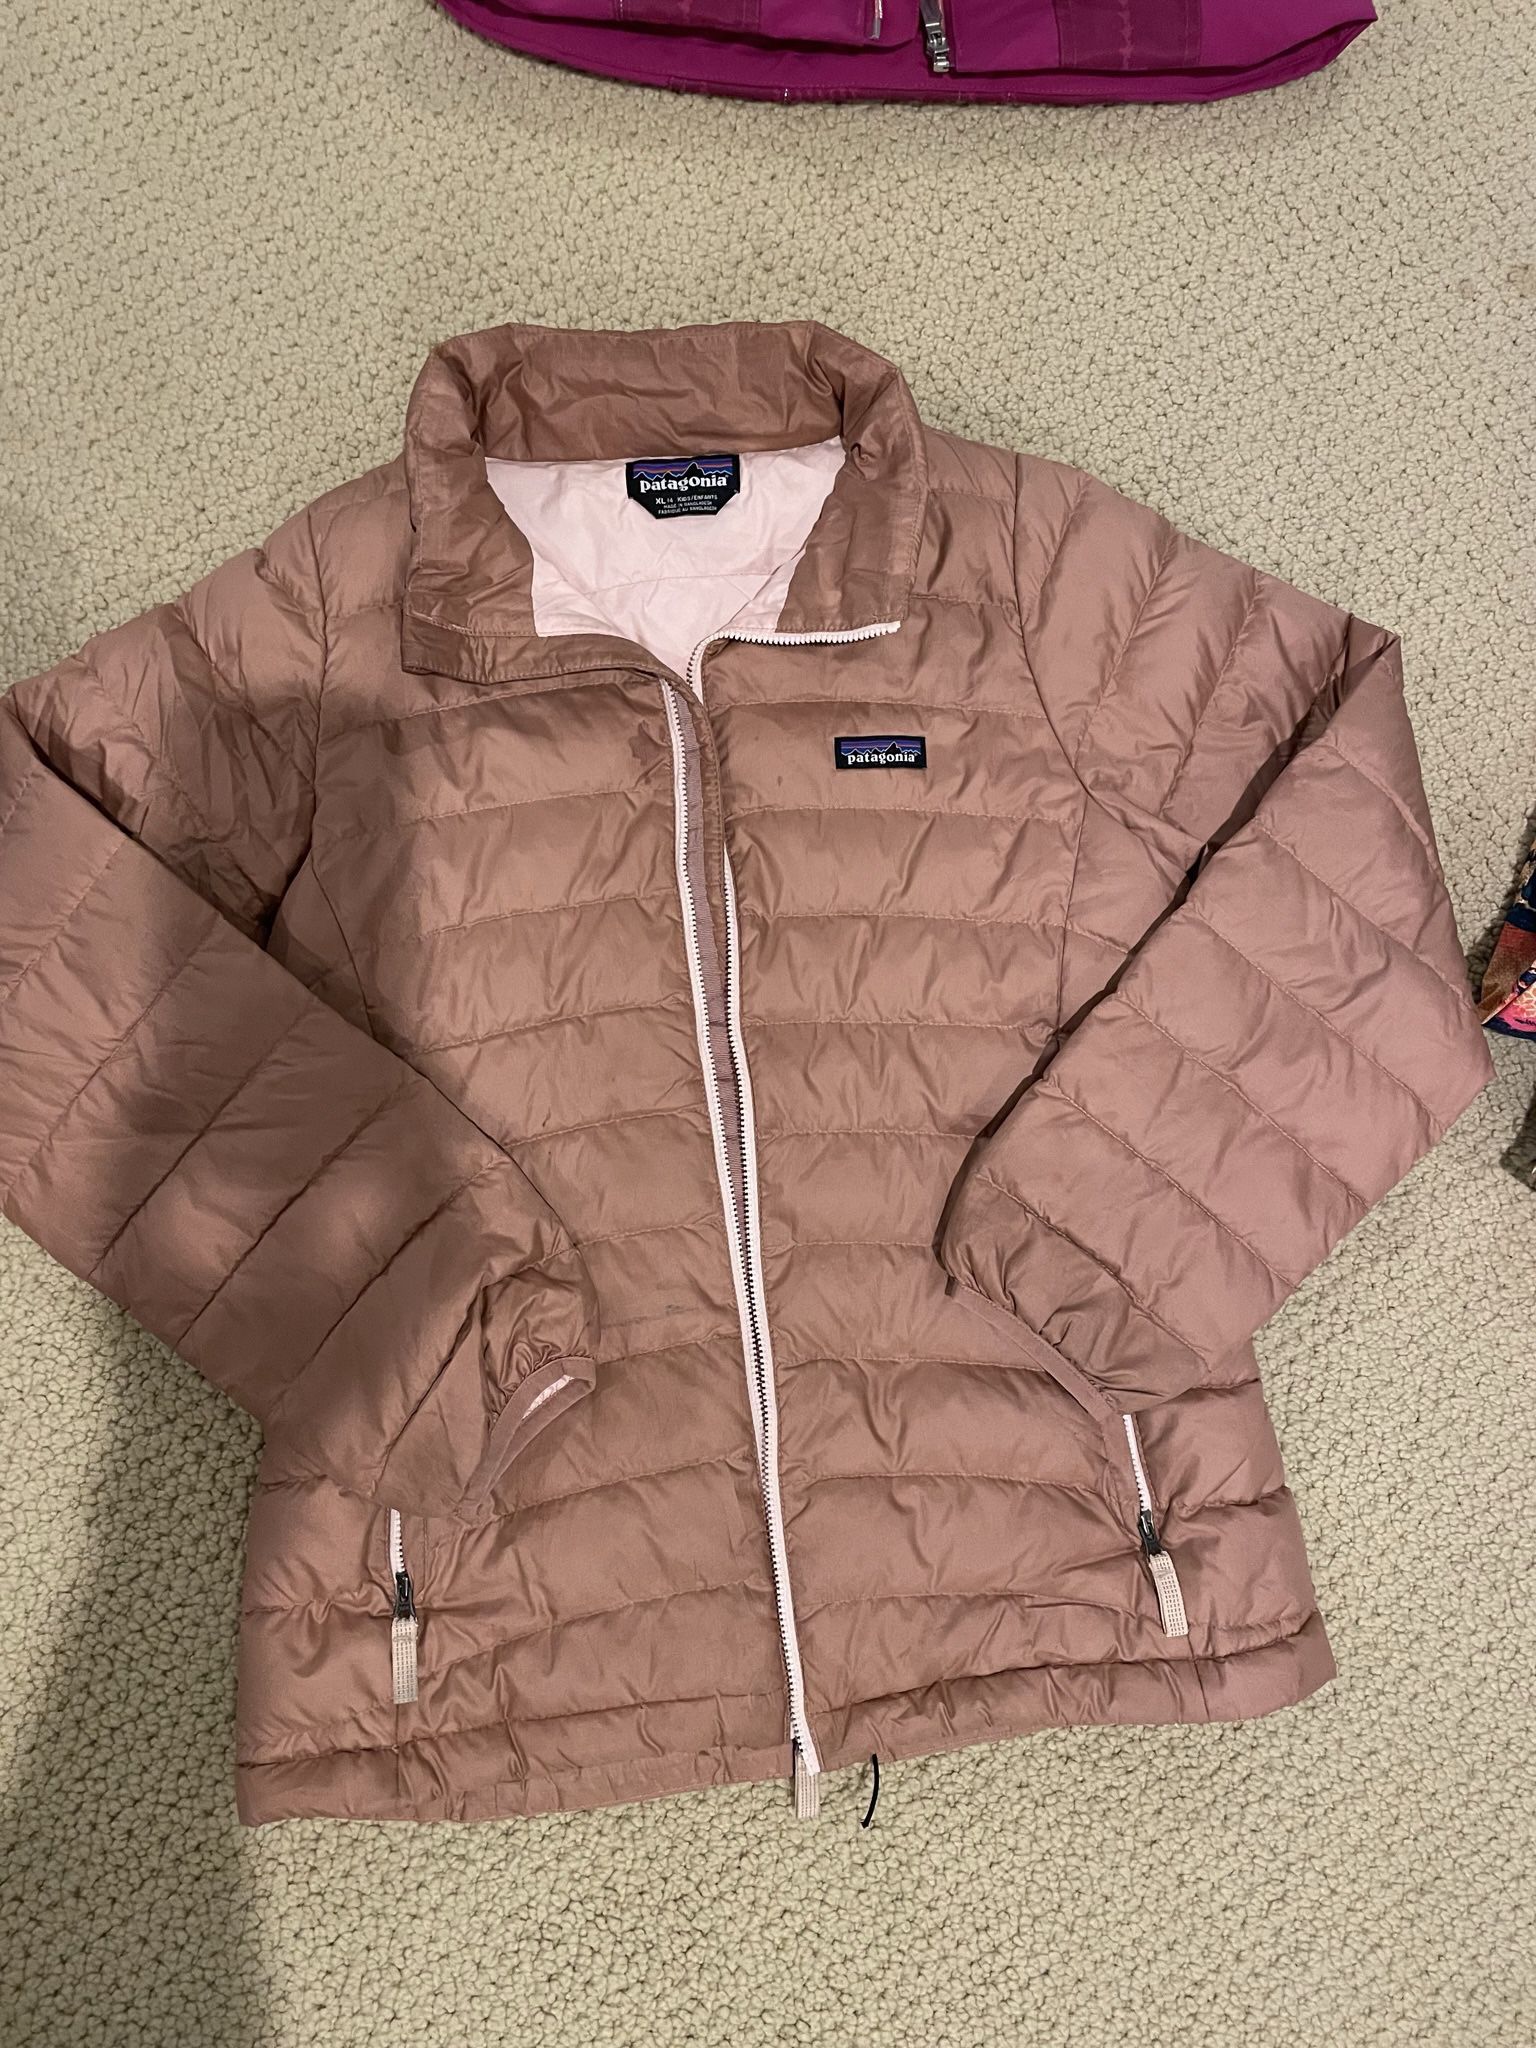 Patagonia Girls Puffer Jacket Size 14